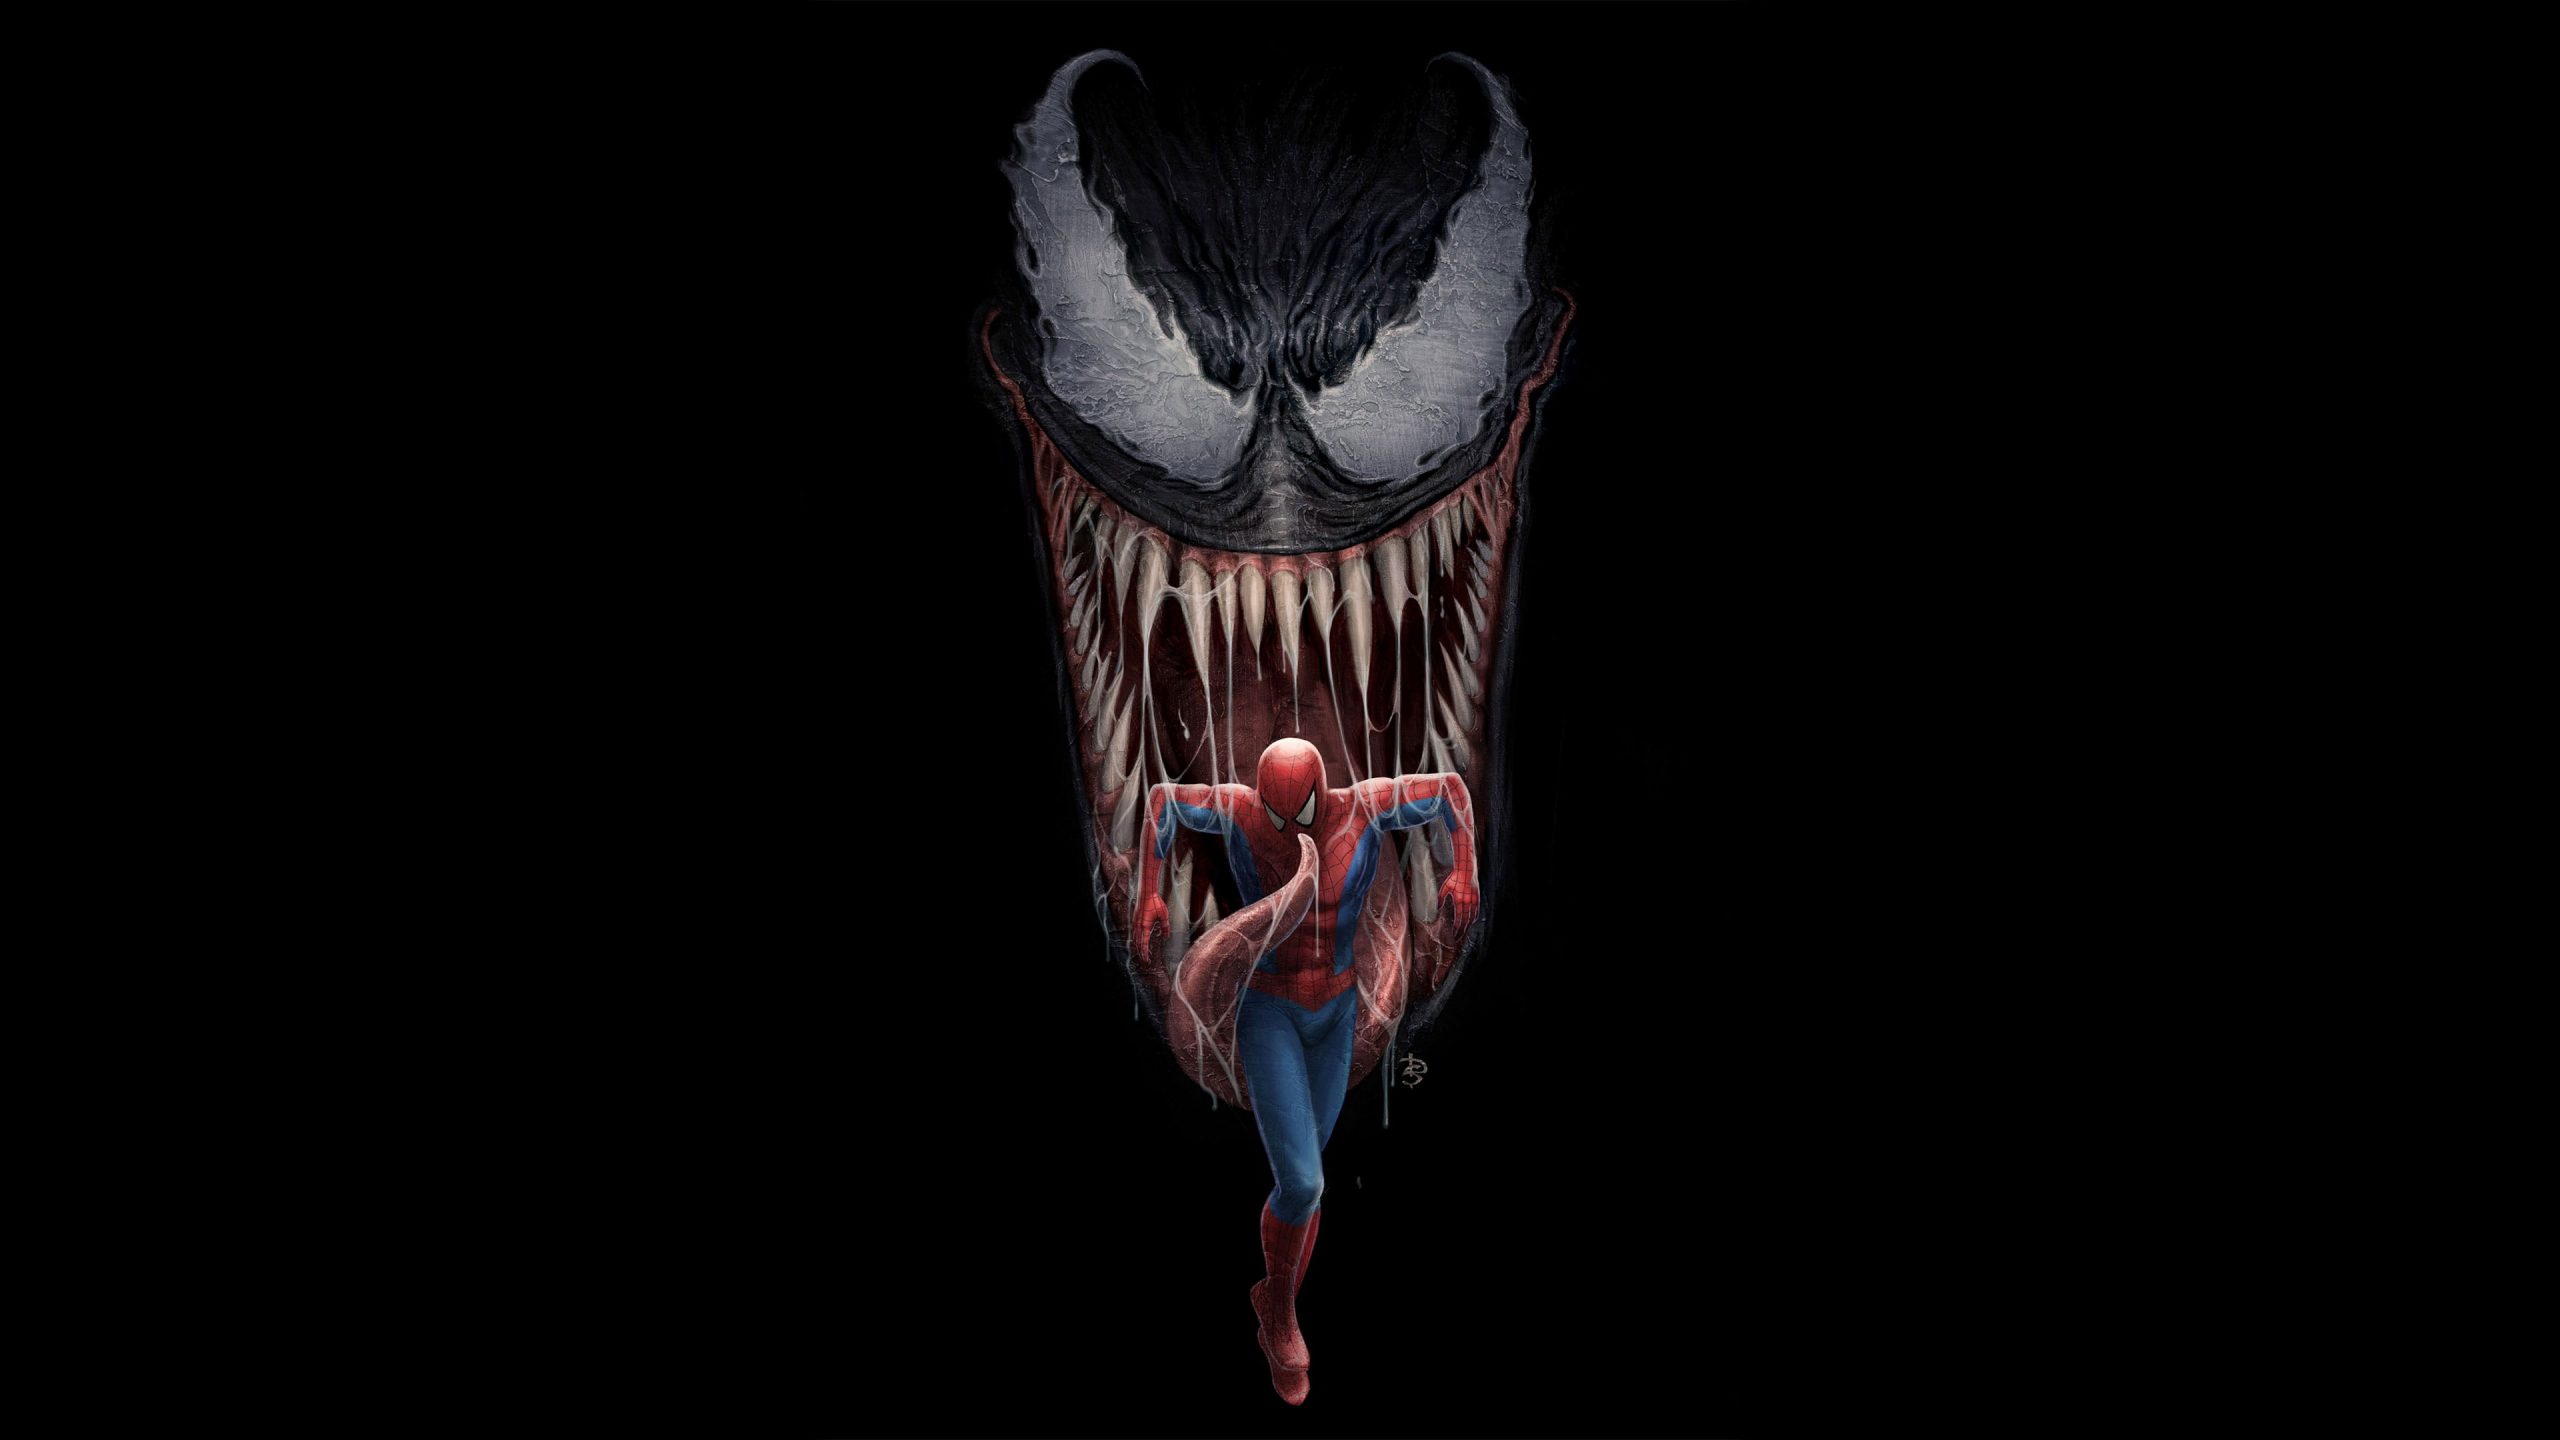 Wallpaper Spiderman, Venom, Artwork, 4k, Hd, Digital Art • Wallpaper For You HD Wallpaper For Desktop & Mobile